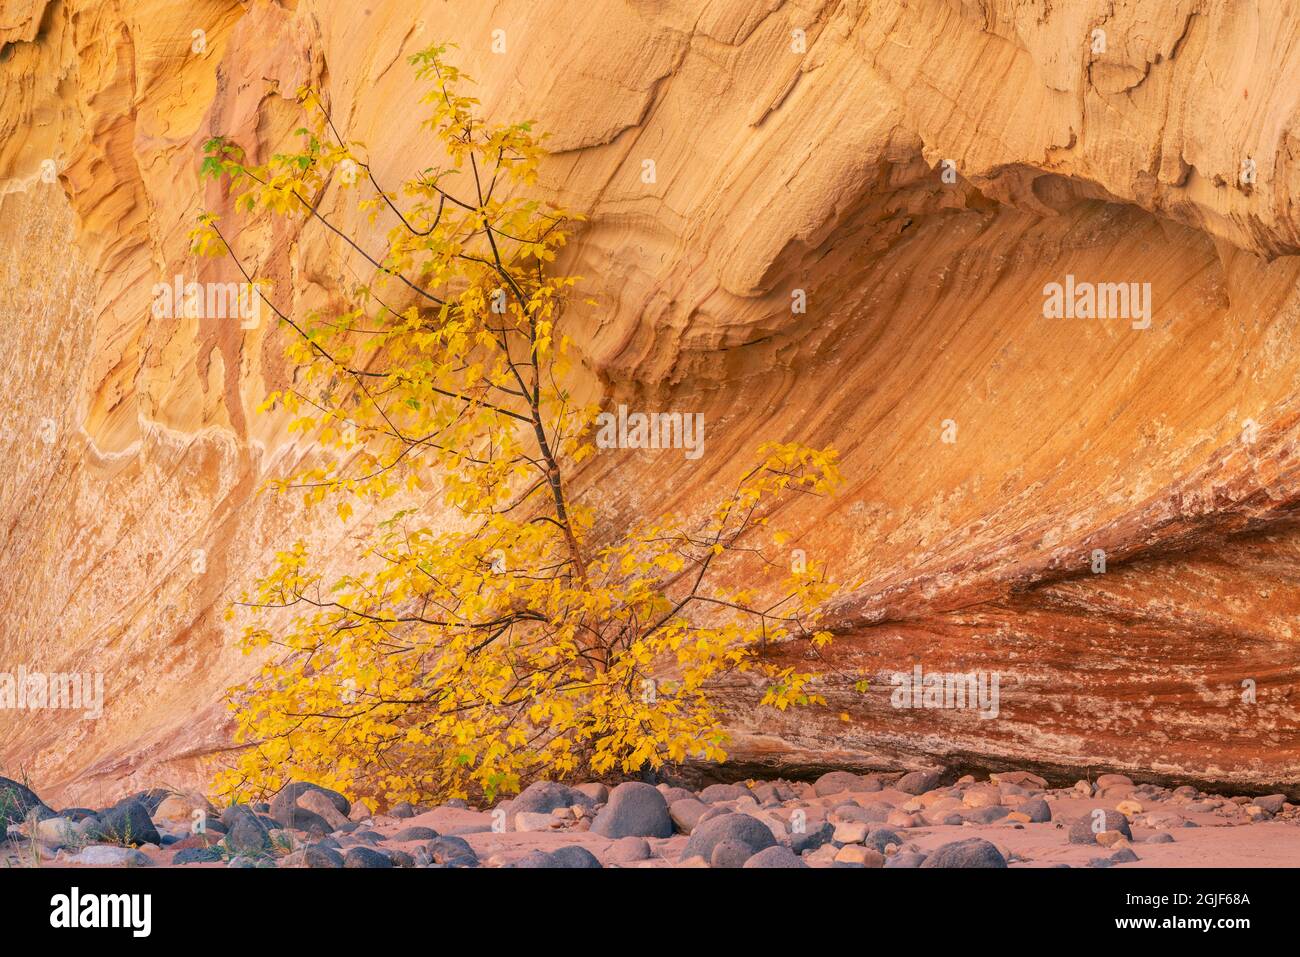 USA, Utah, Capitol Reef National Park, herbstlicher, farbiger Kastenstelder, der in einer Sandsteinnische in der Nähe des Fremont River wächst. Stockfoto